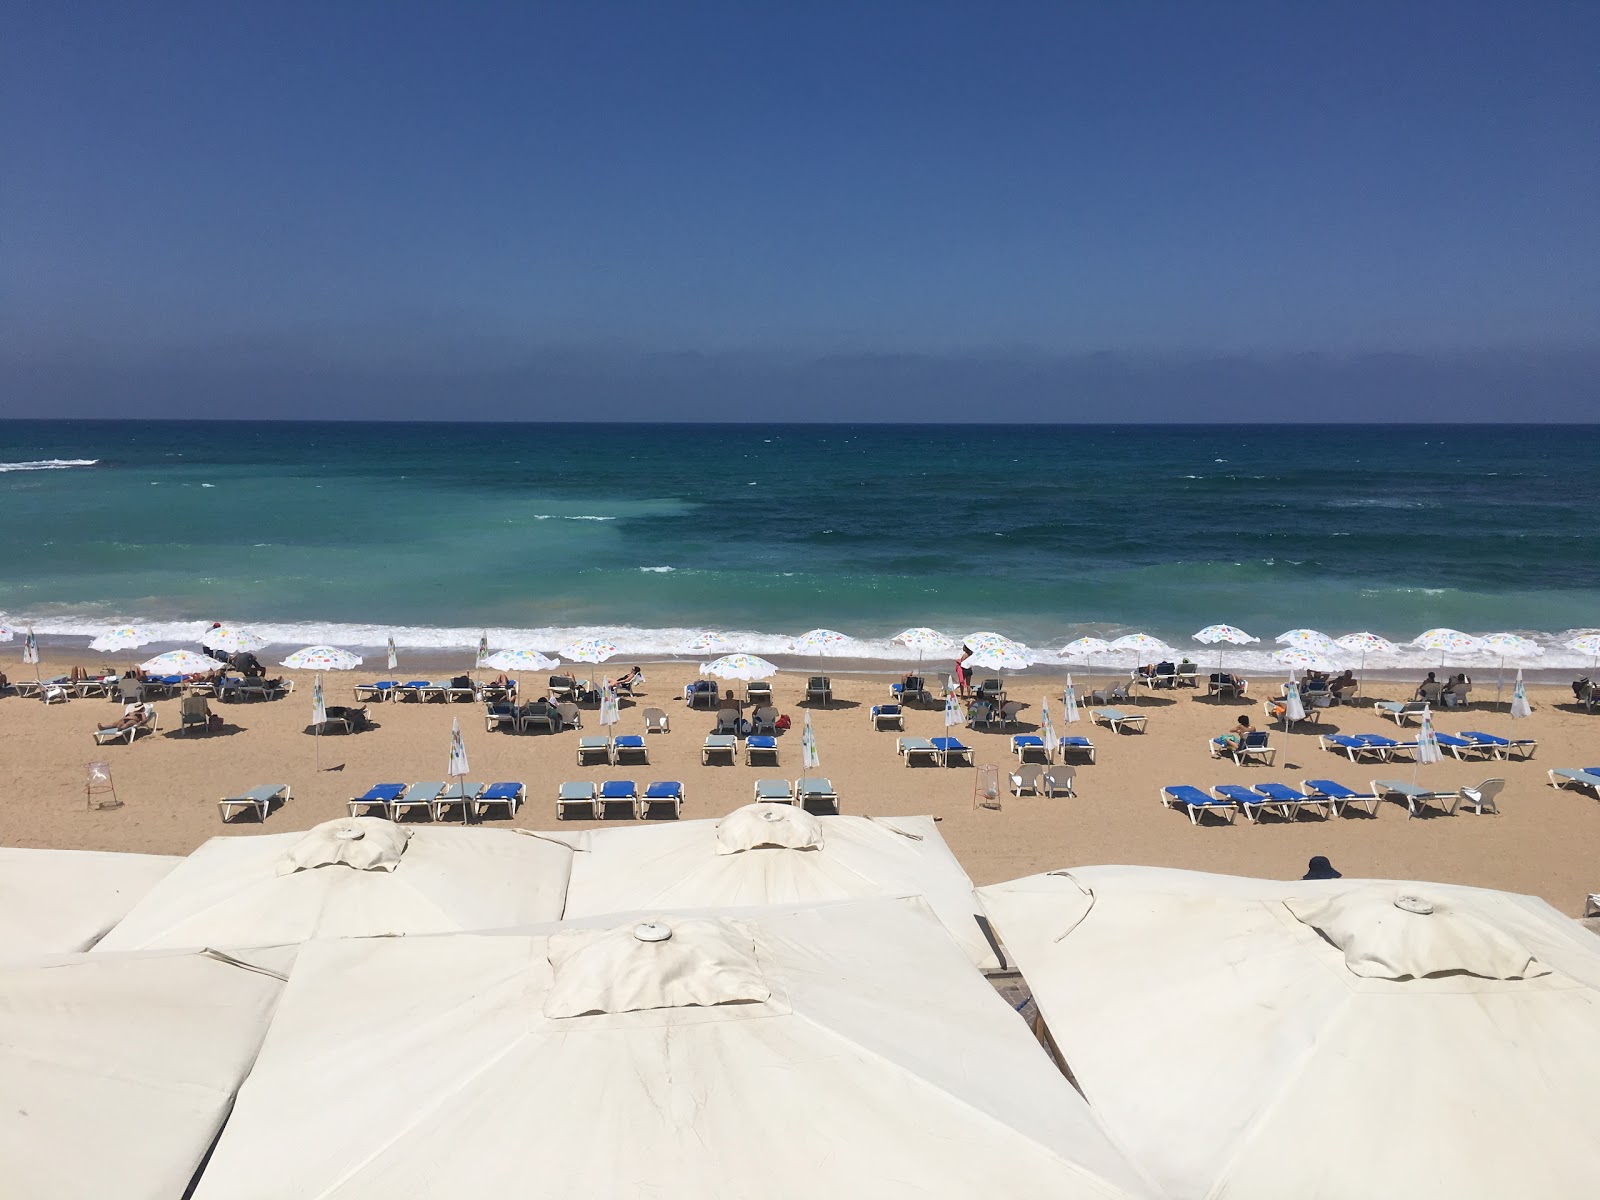 Zdjęcie Givat Aliya beach - popularne miejsce wśród znawców relaksu